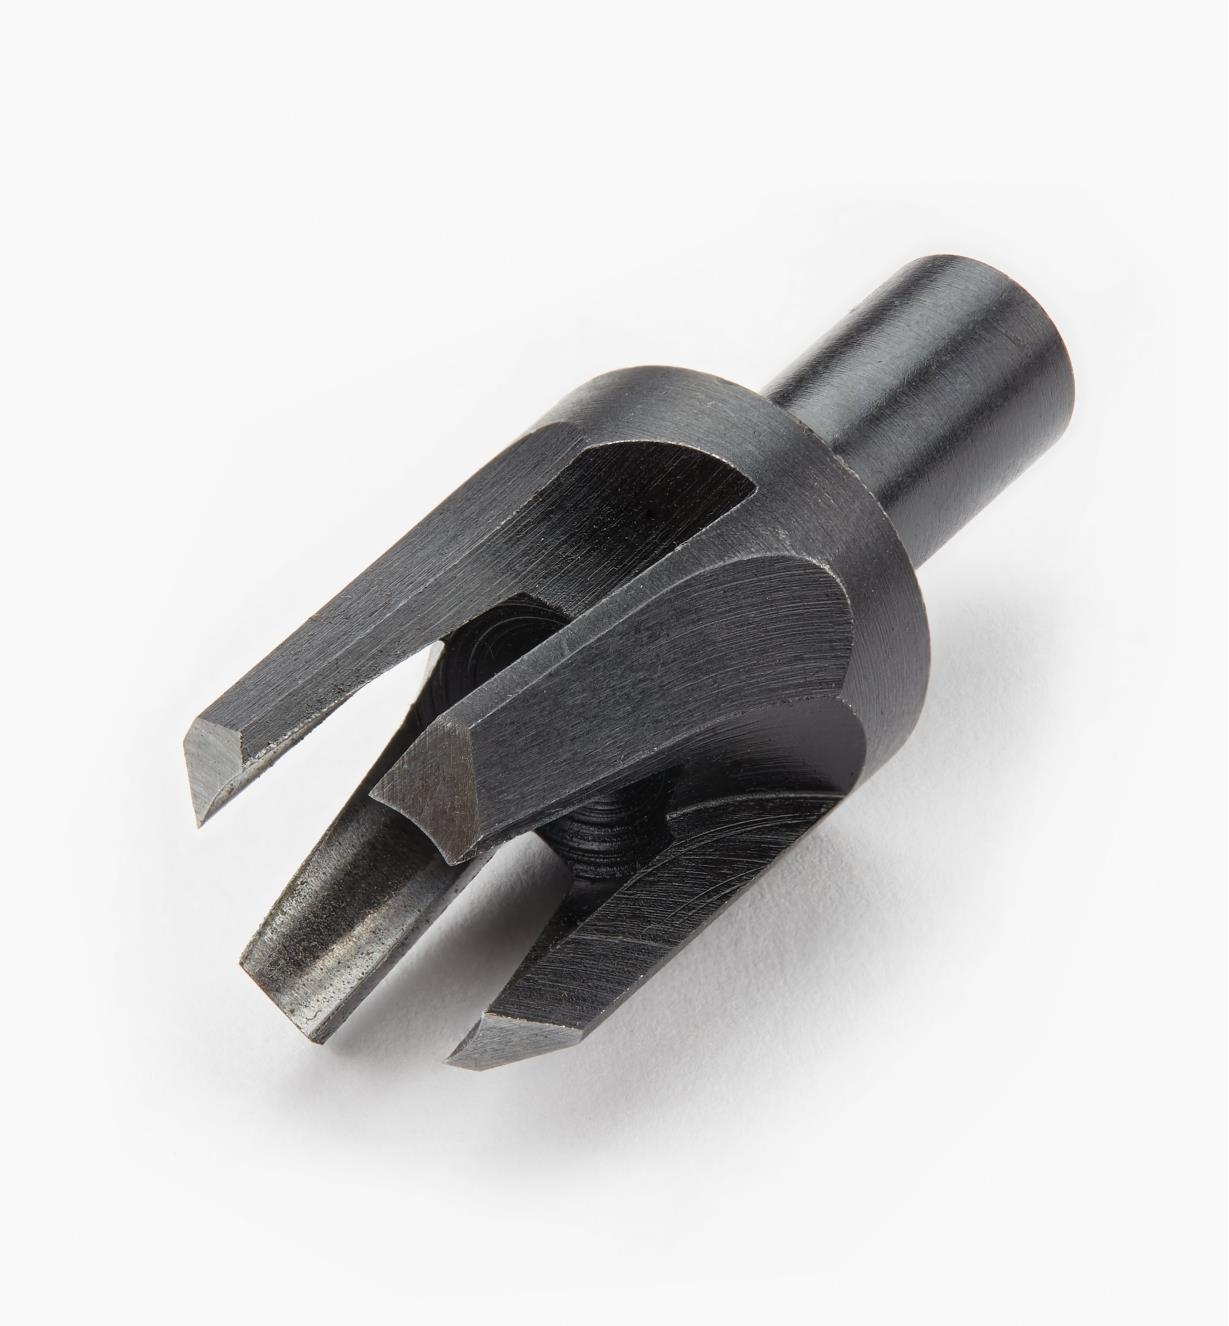 05J0504 - Veritas 1/2" Tapered Snug-Plug Cutter